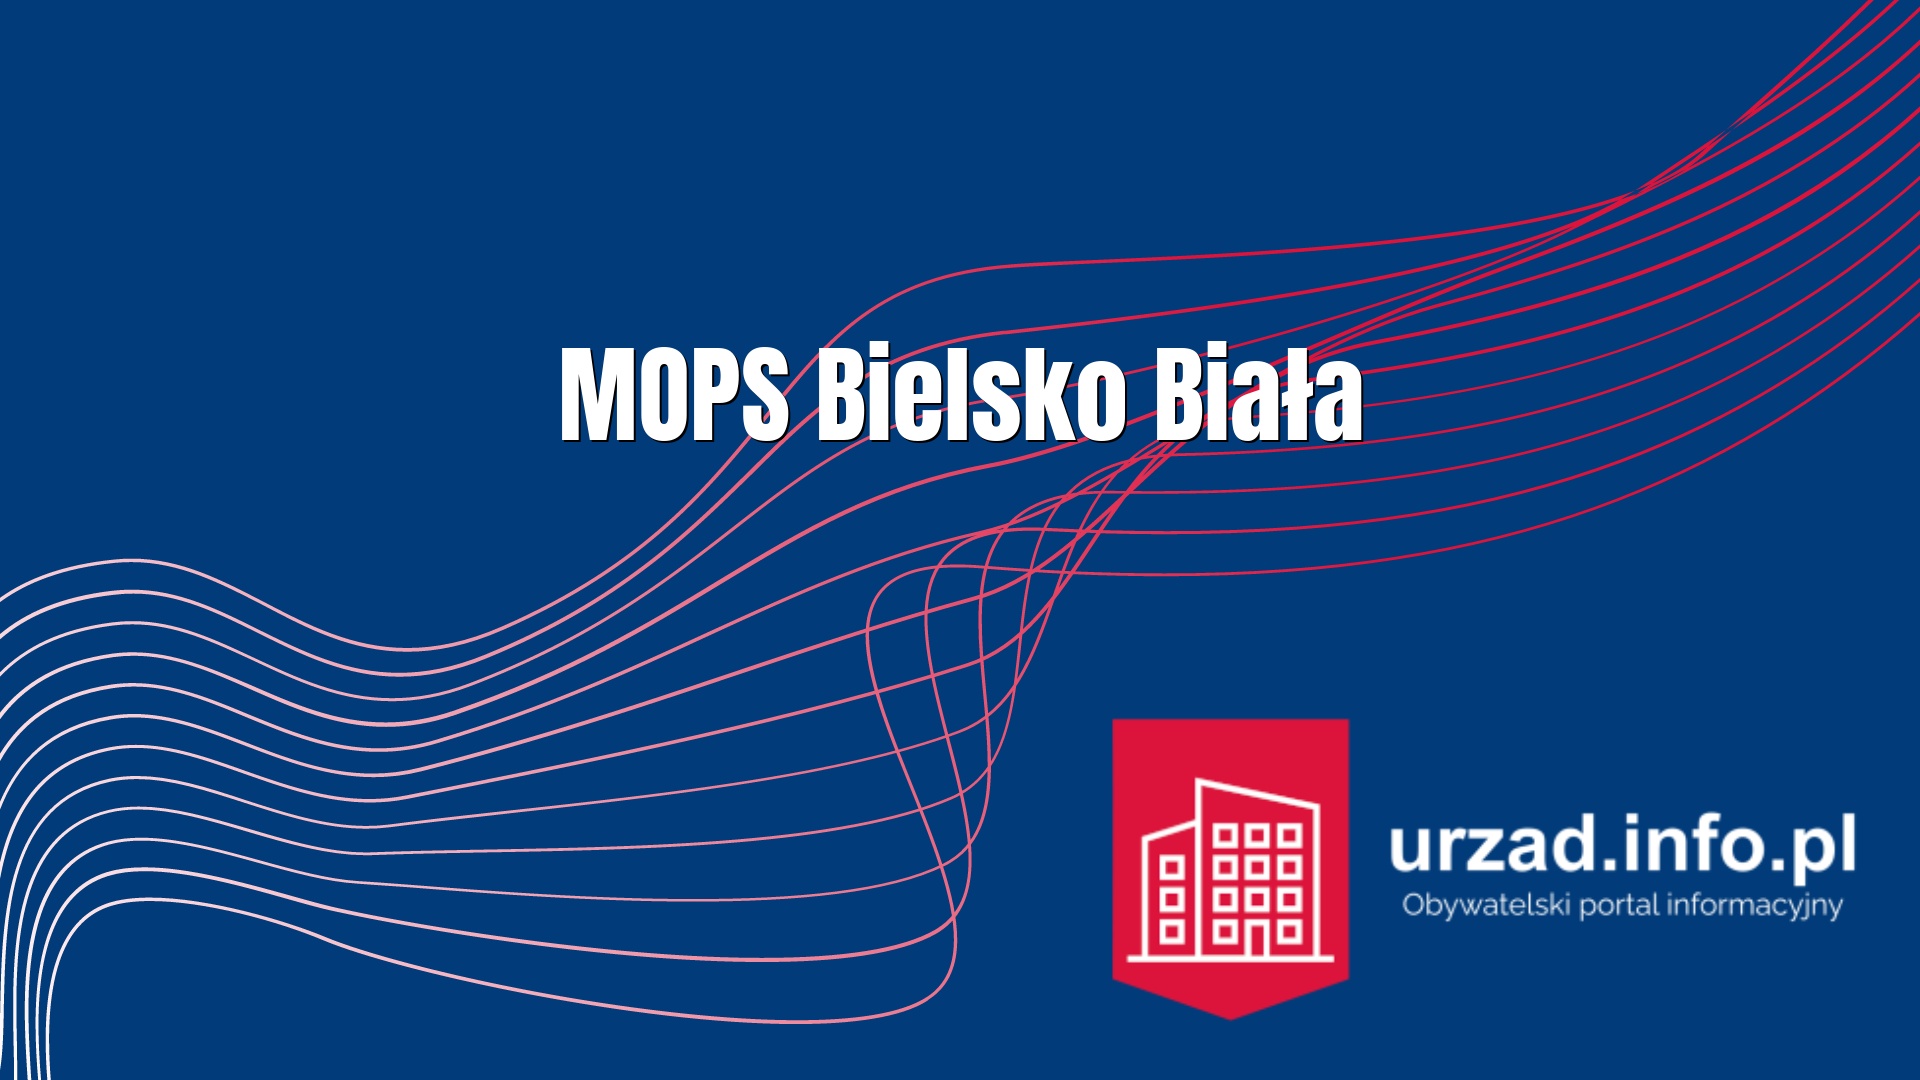 MOPS Bielsko Biała - Miejski Ośrodek Pomocy Społecznej w Bielsku Białej